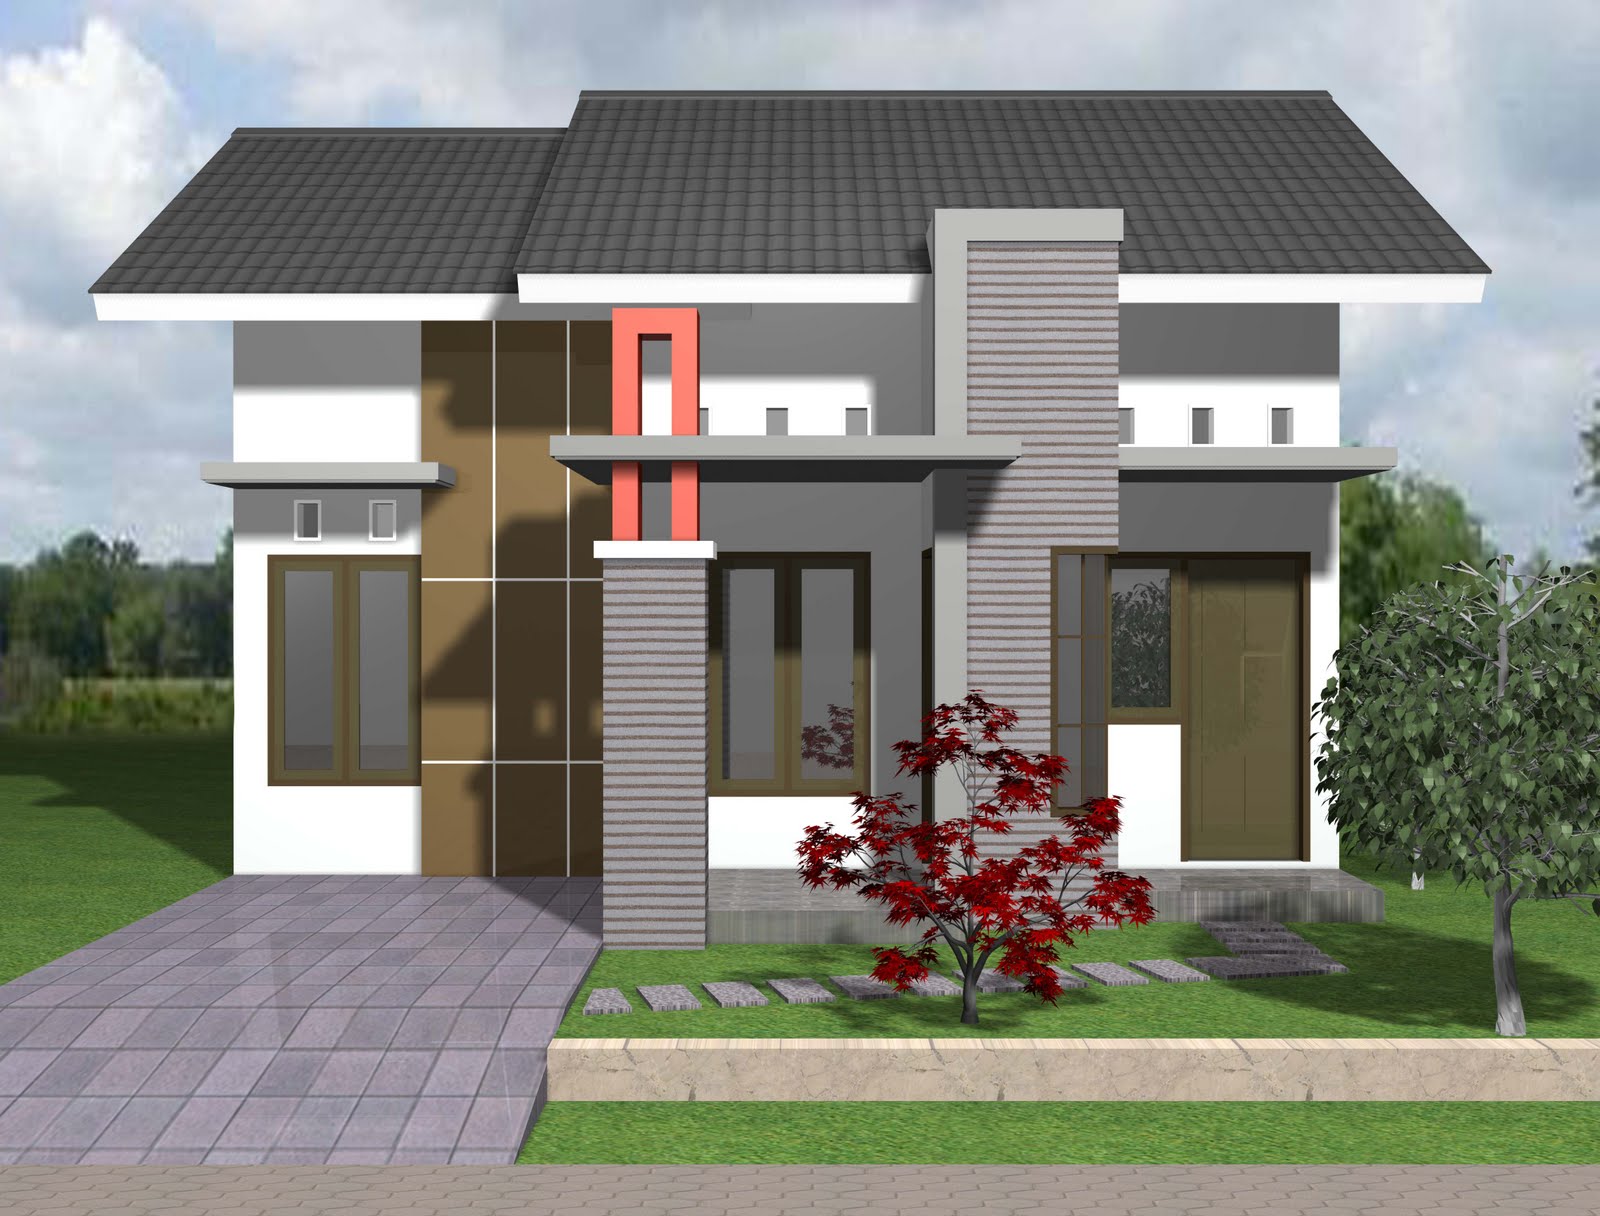 Desain Rumah Minimalis Type 45 Kumpulan Desain Rumah